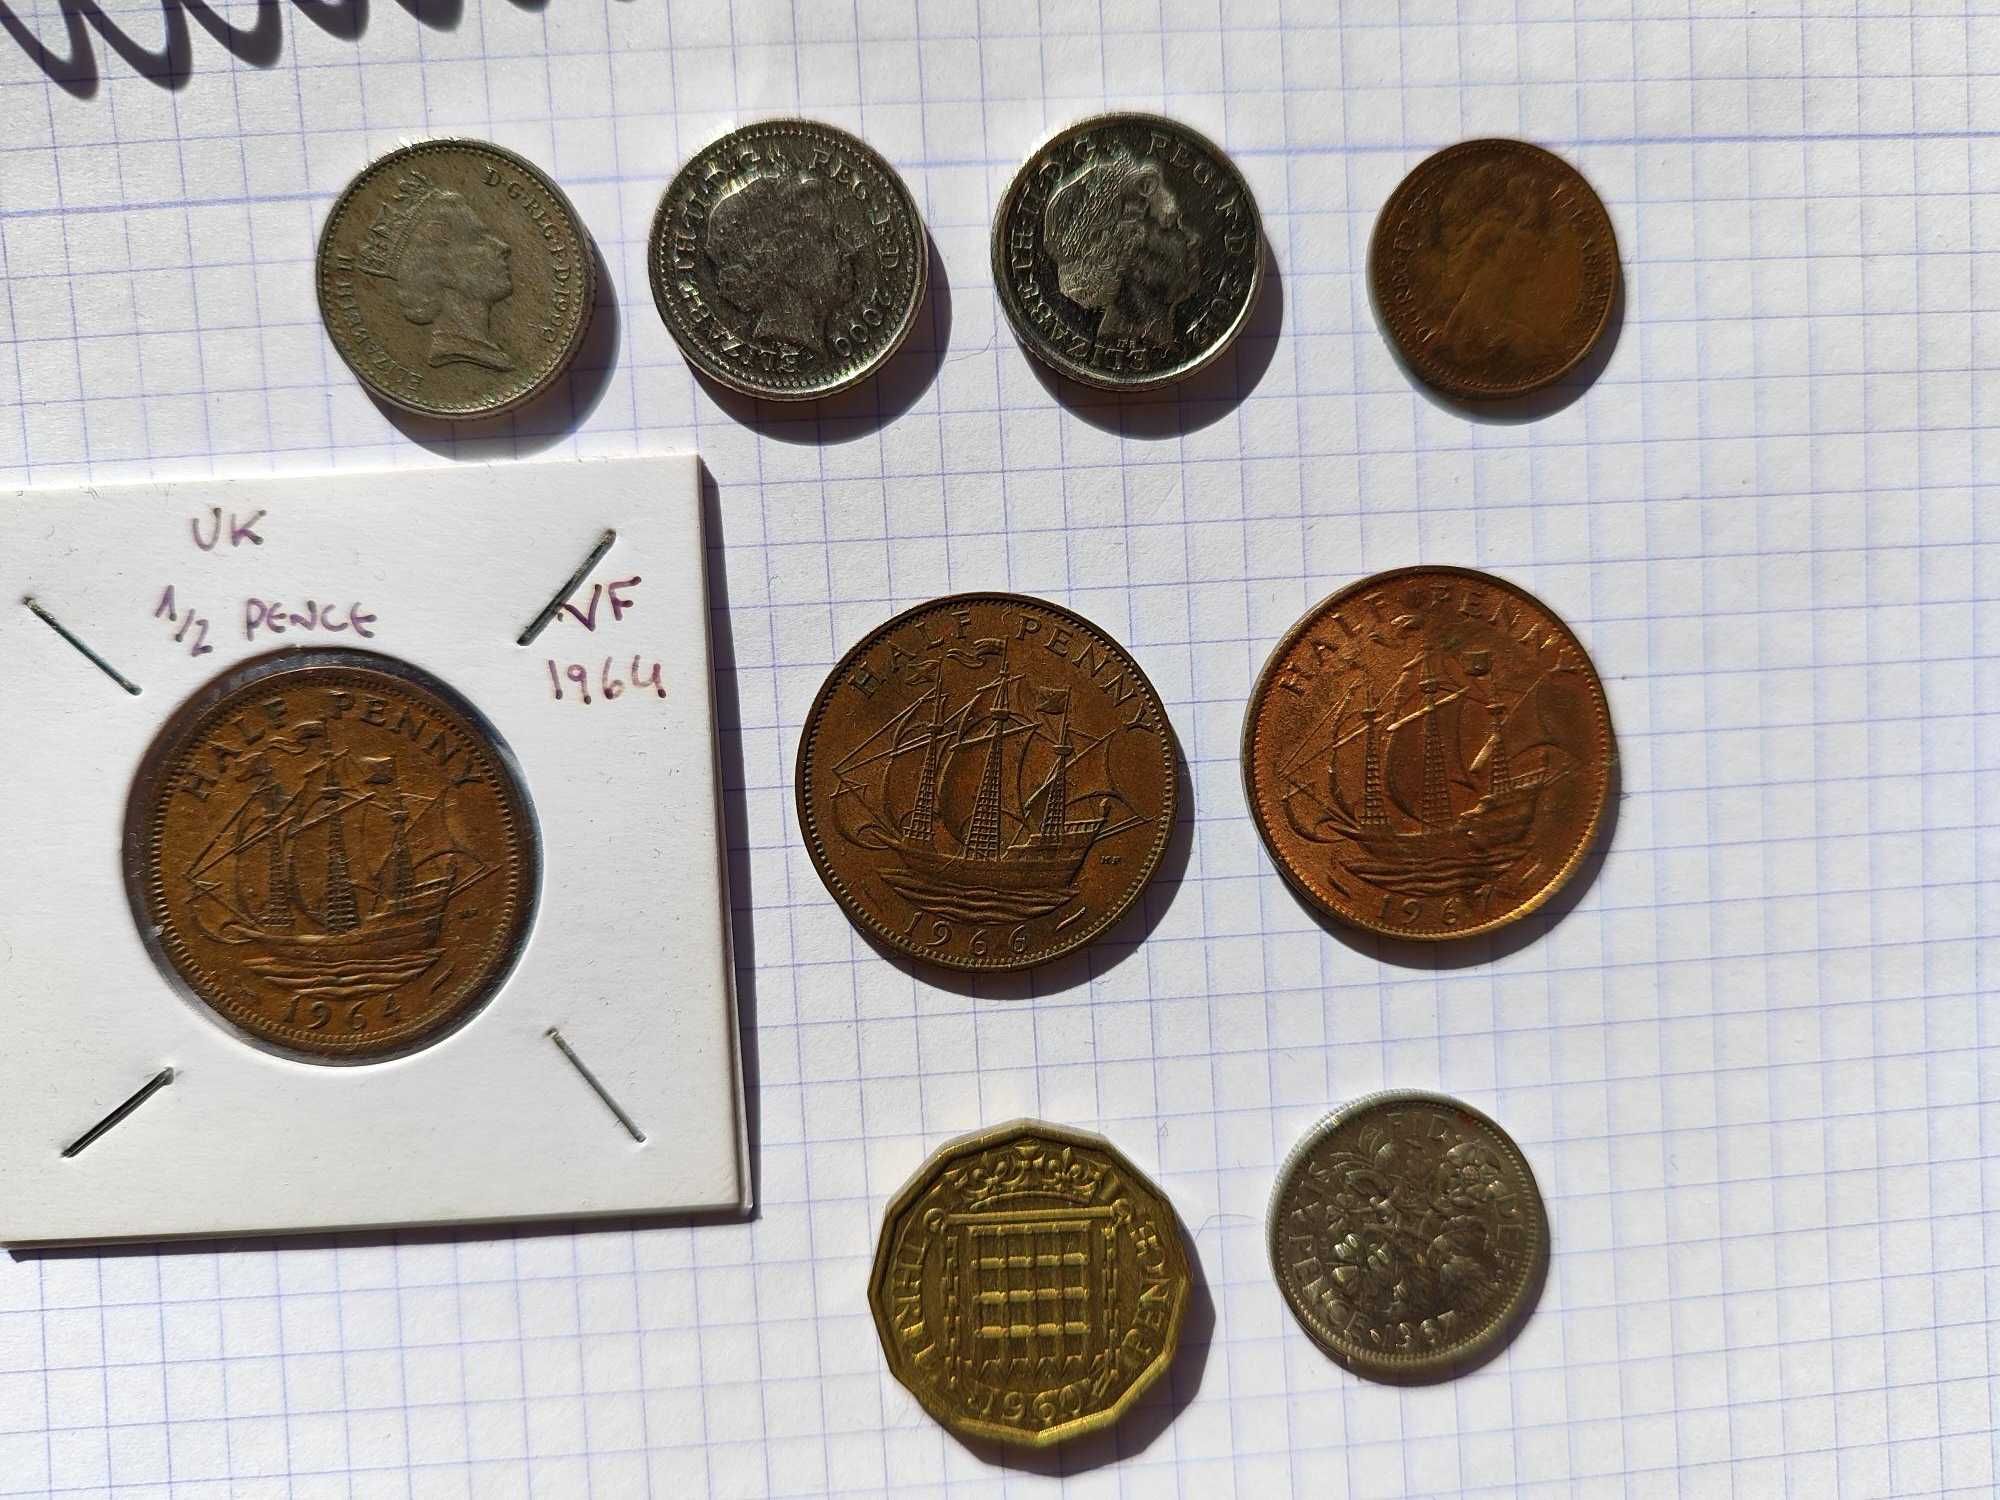 Lote de 39 moedas do Reino Unido (libras) , todas diferentes.